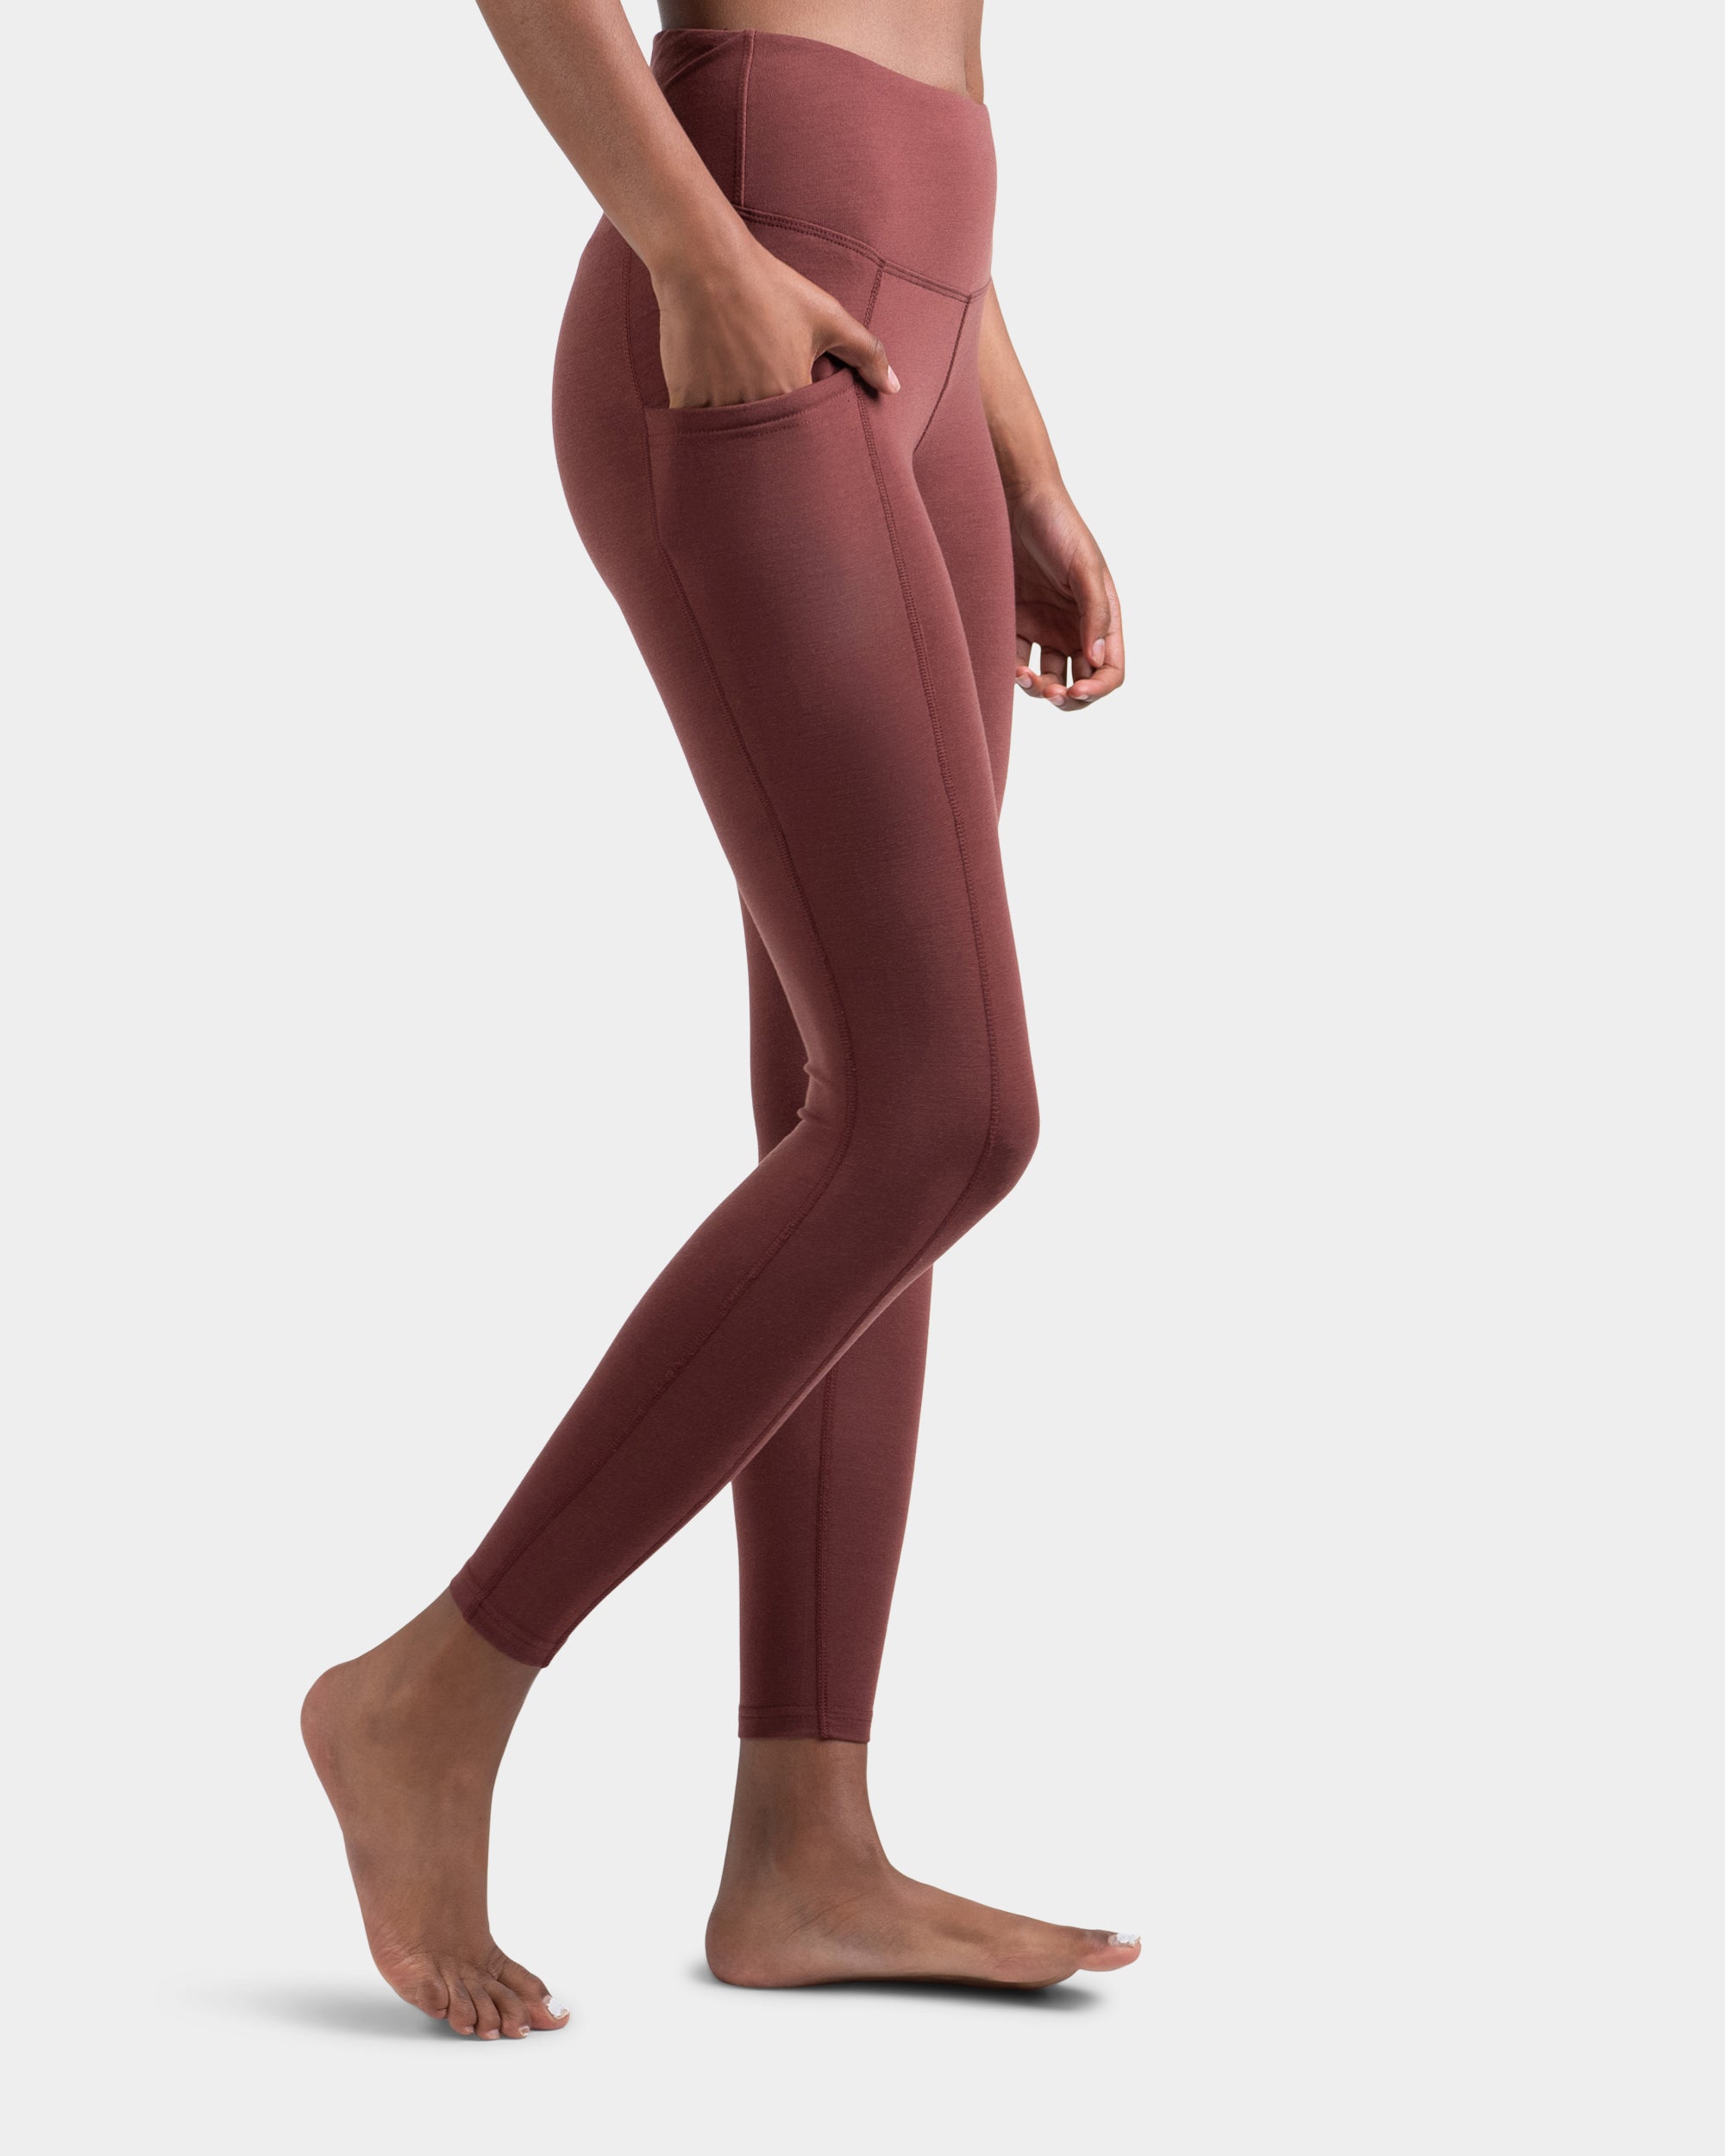 Lululemon Colour Me Ombre Leggings  Ombre leggings, Clothes design,  Fashion tips